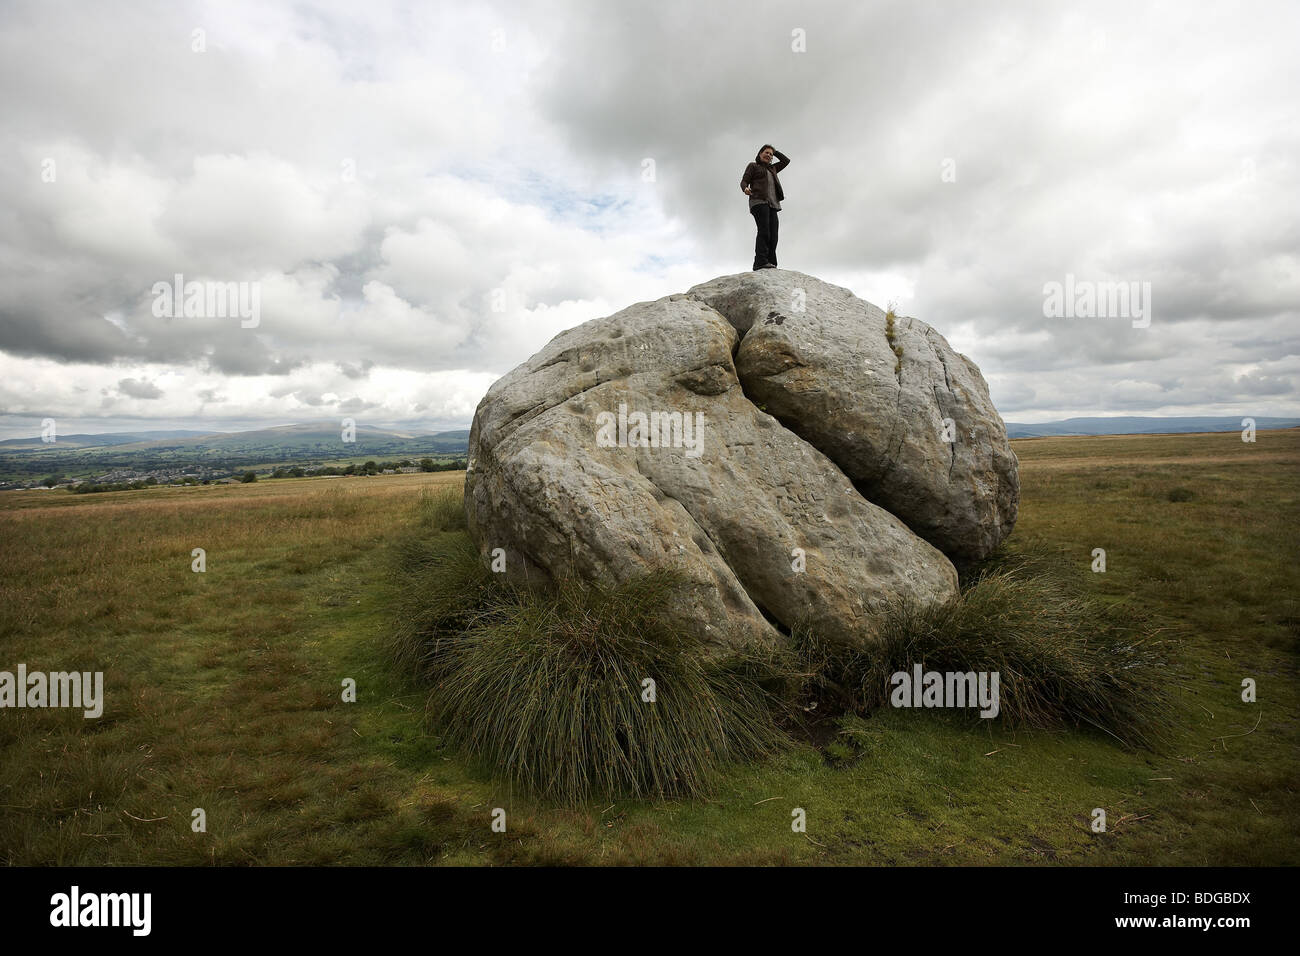 La grosse pierre, la grande pierre d'Fourstones, couvert de graffitis anciens et modernes, Tatham fells, Lancashire. Banque D'Images